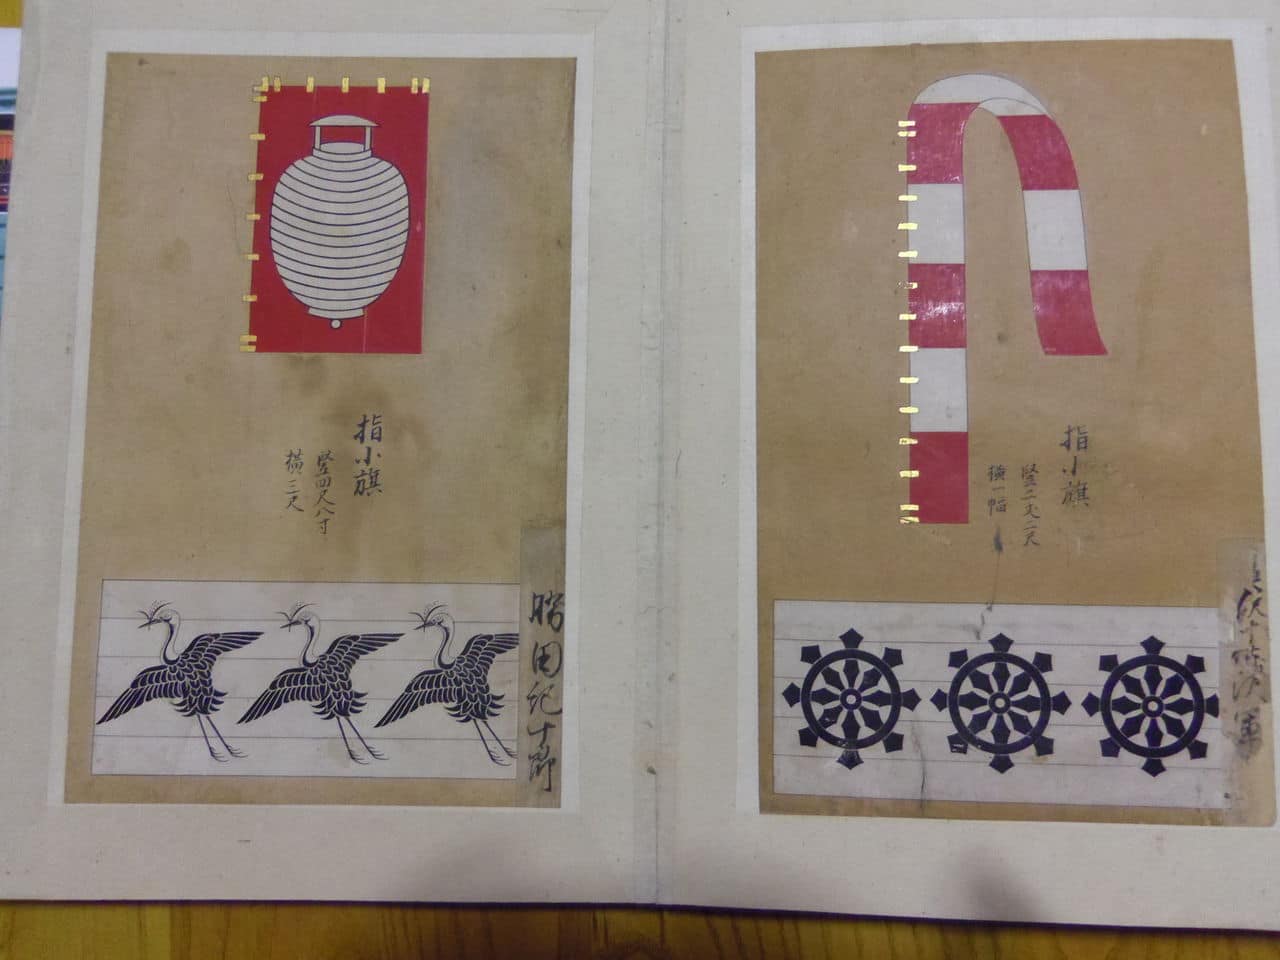 Compendio de Banderas Samurai Oficial de alrededor de 1750 hecho, pintado, escrito y miniado a mano. (Dedicado a Sol Mar) IMGP3175